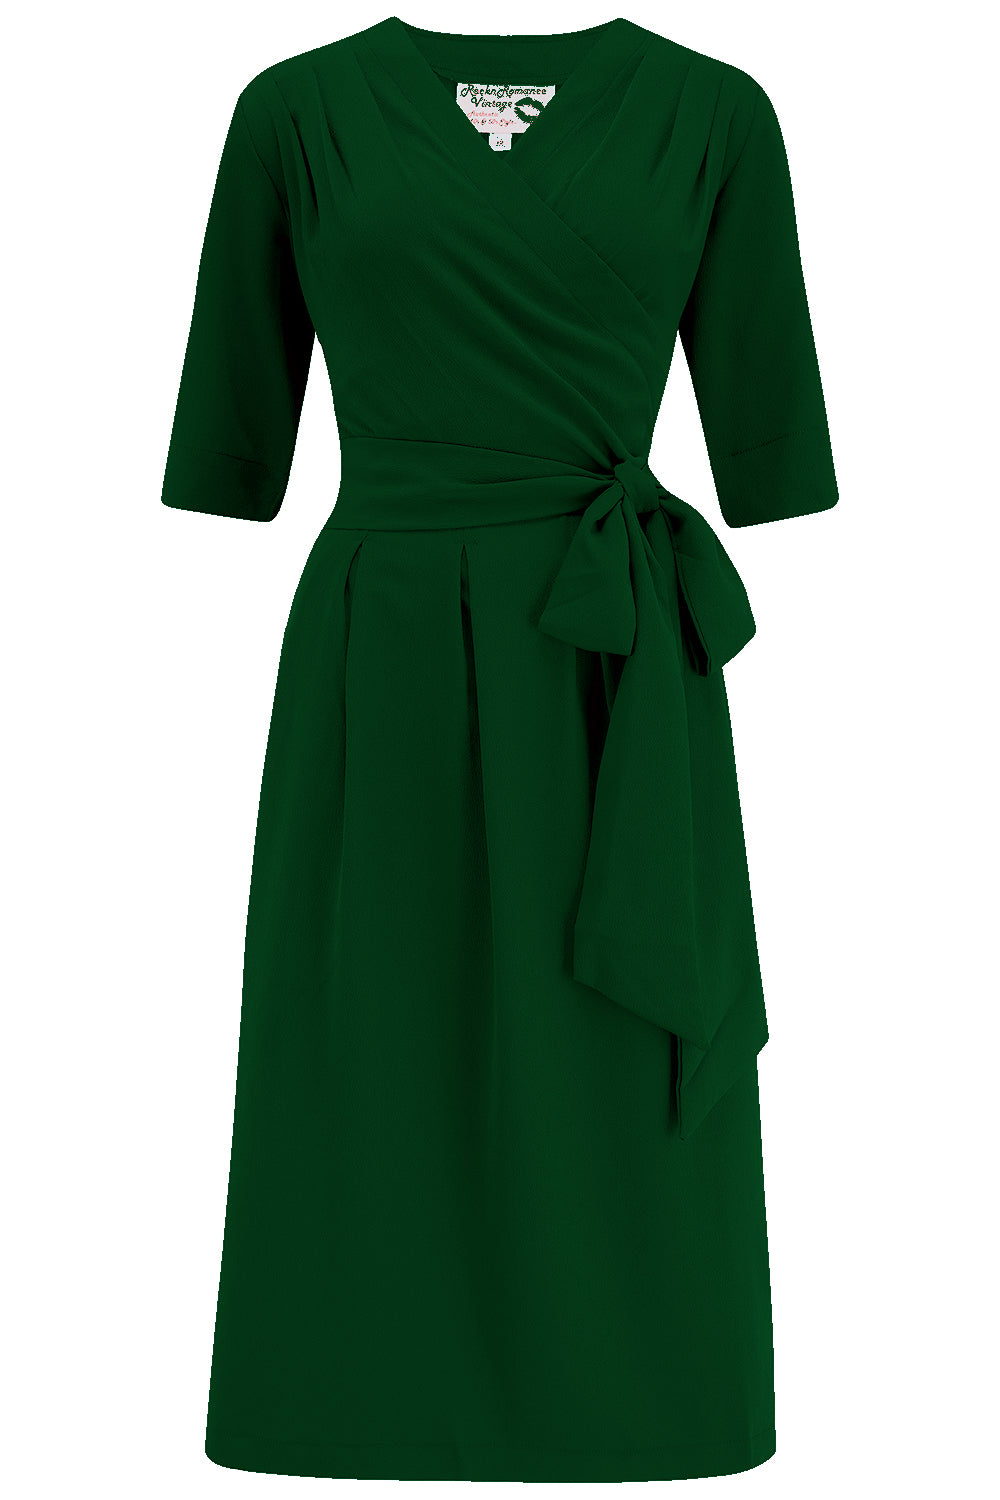 The "Vivien" Full Wrap Dress in Green, True 1940s To Early 1950s Style - CC41, Goodwood Revival, Twinwood Festival, Viva Las Vegas Rockabilly Weekend Rock n Romance Rock n Romance